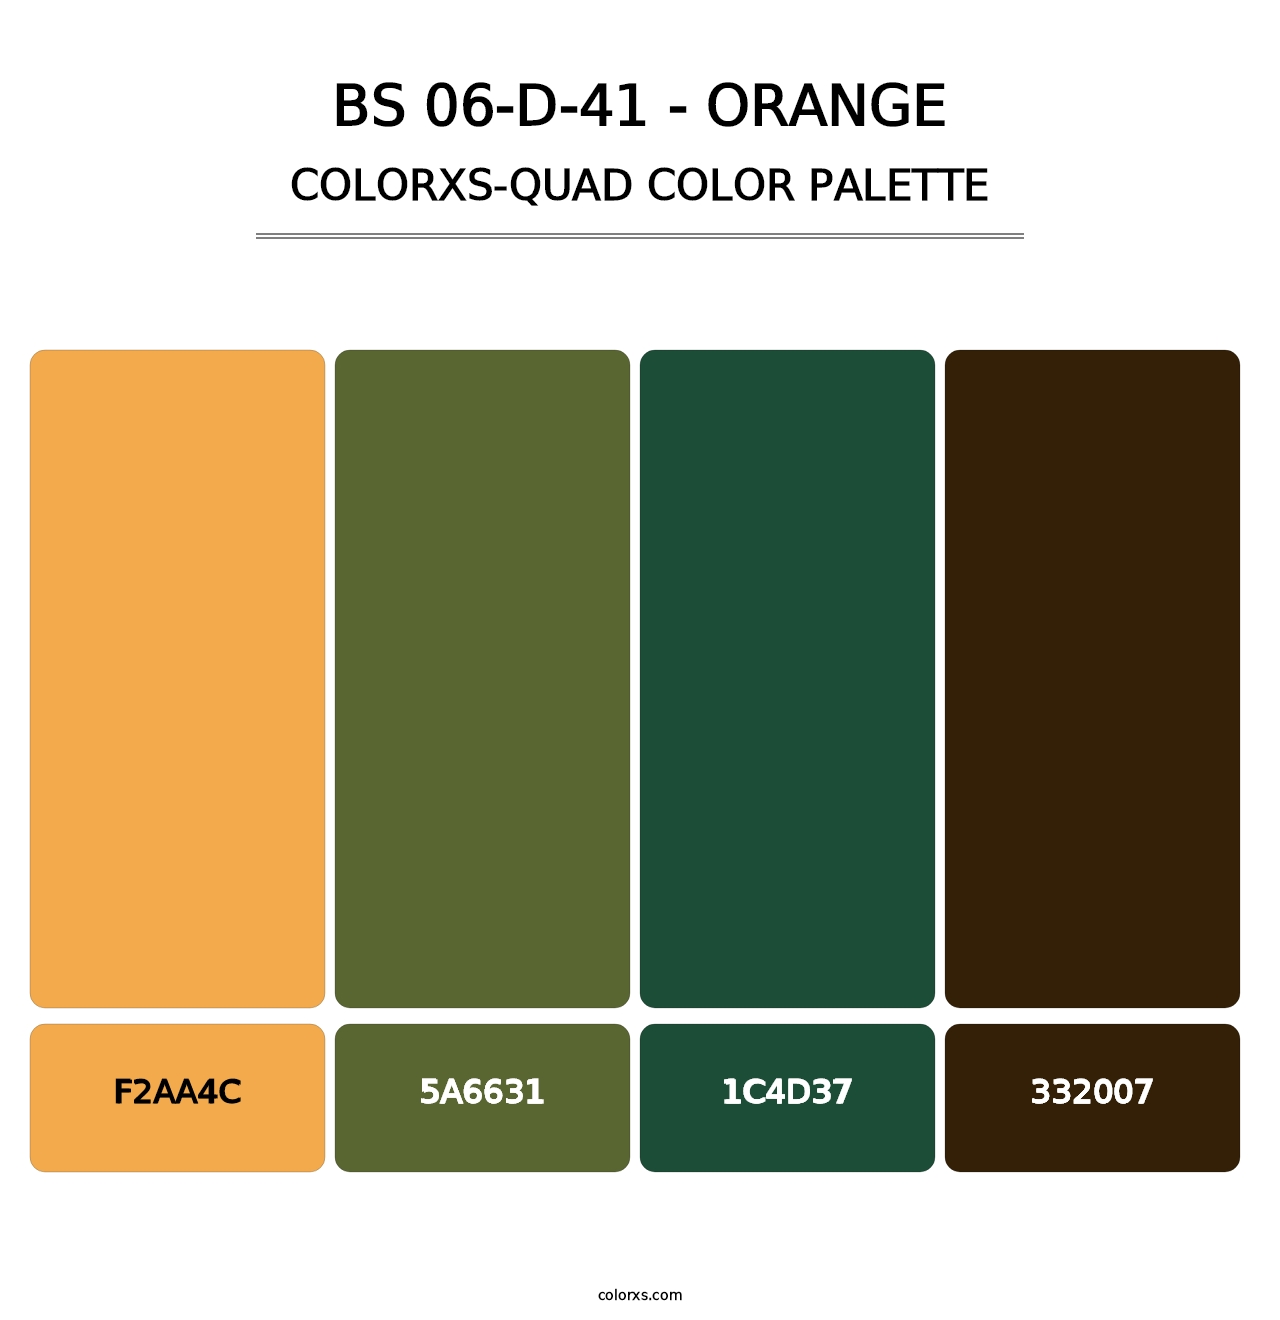 BS 06-D-41 - Orange - Colorxs Quad Palette